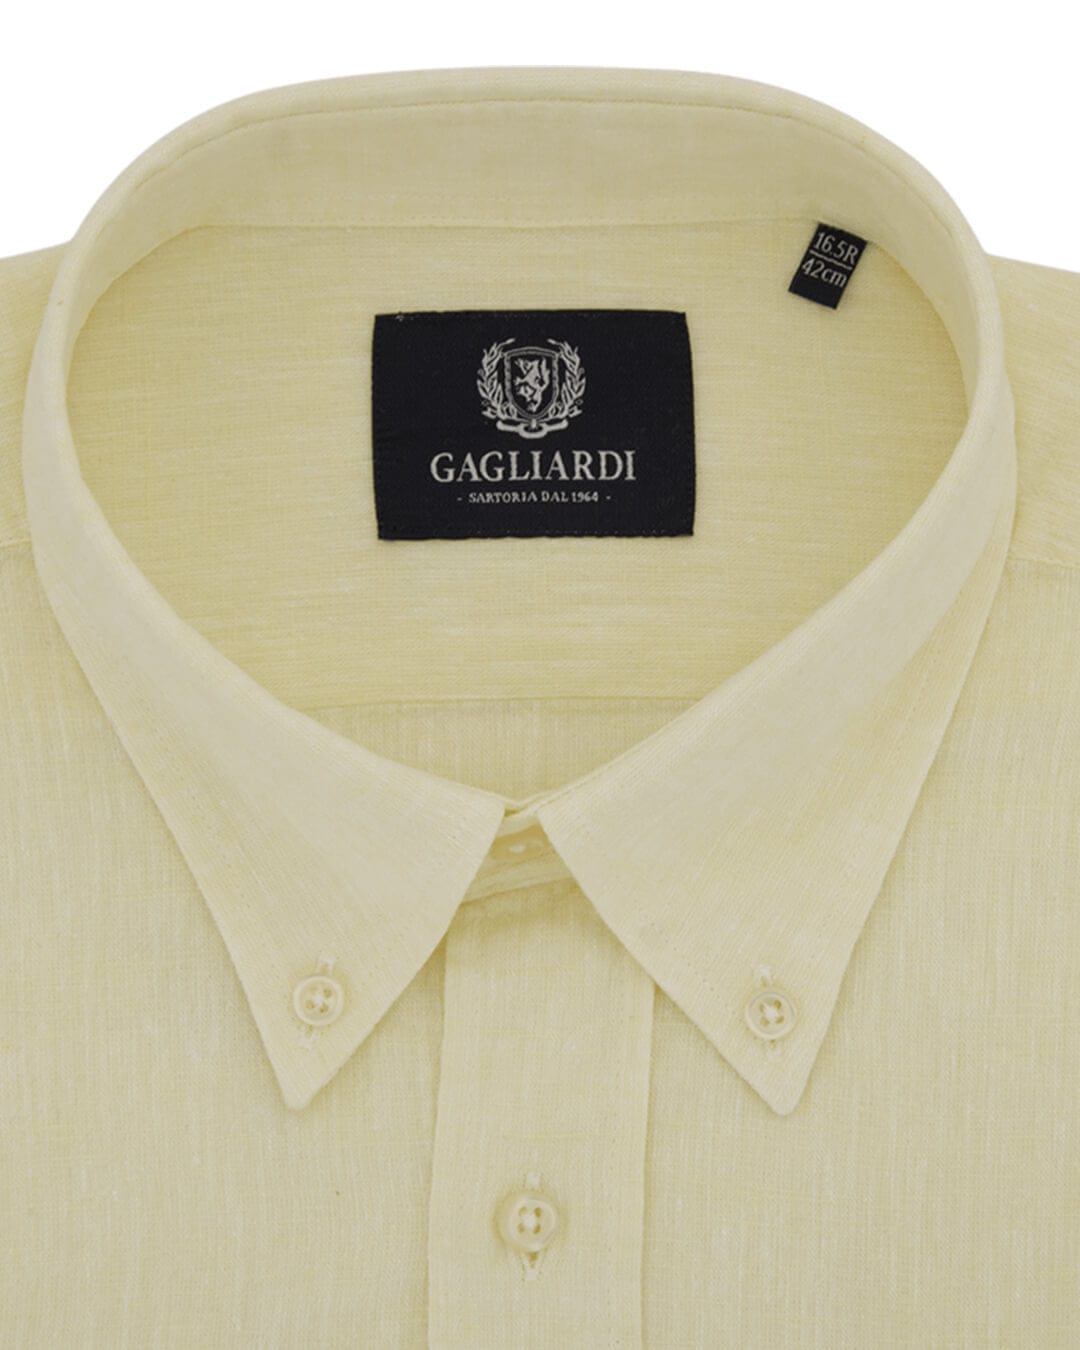 Gagliardi Shirts Gagliardi Yellow Plain Tailored Fit Button-Down Collar Linen Shirt